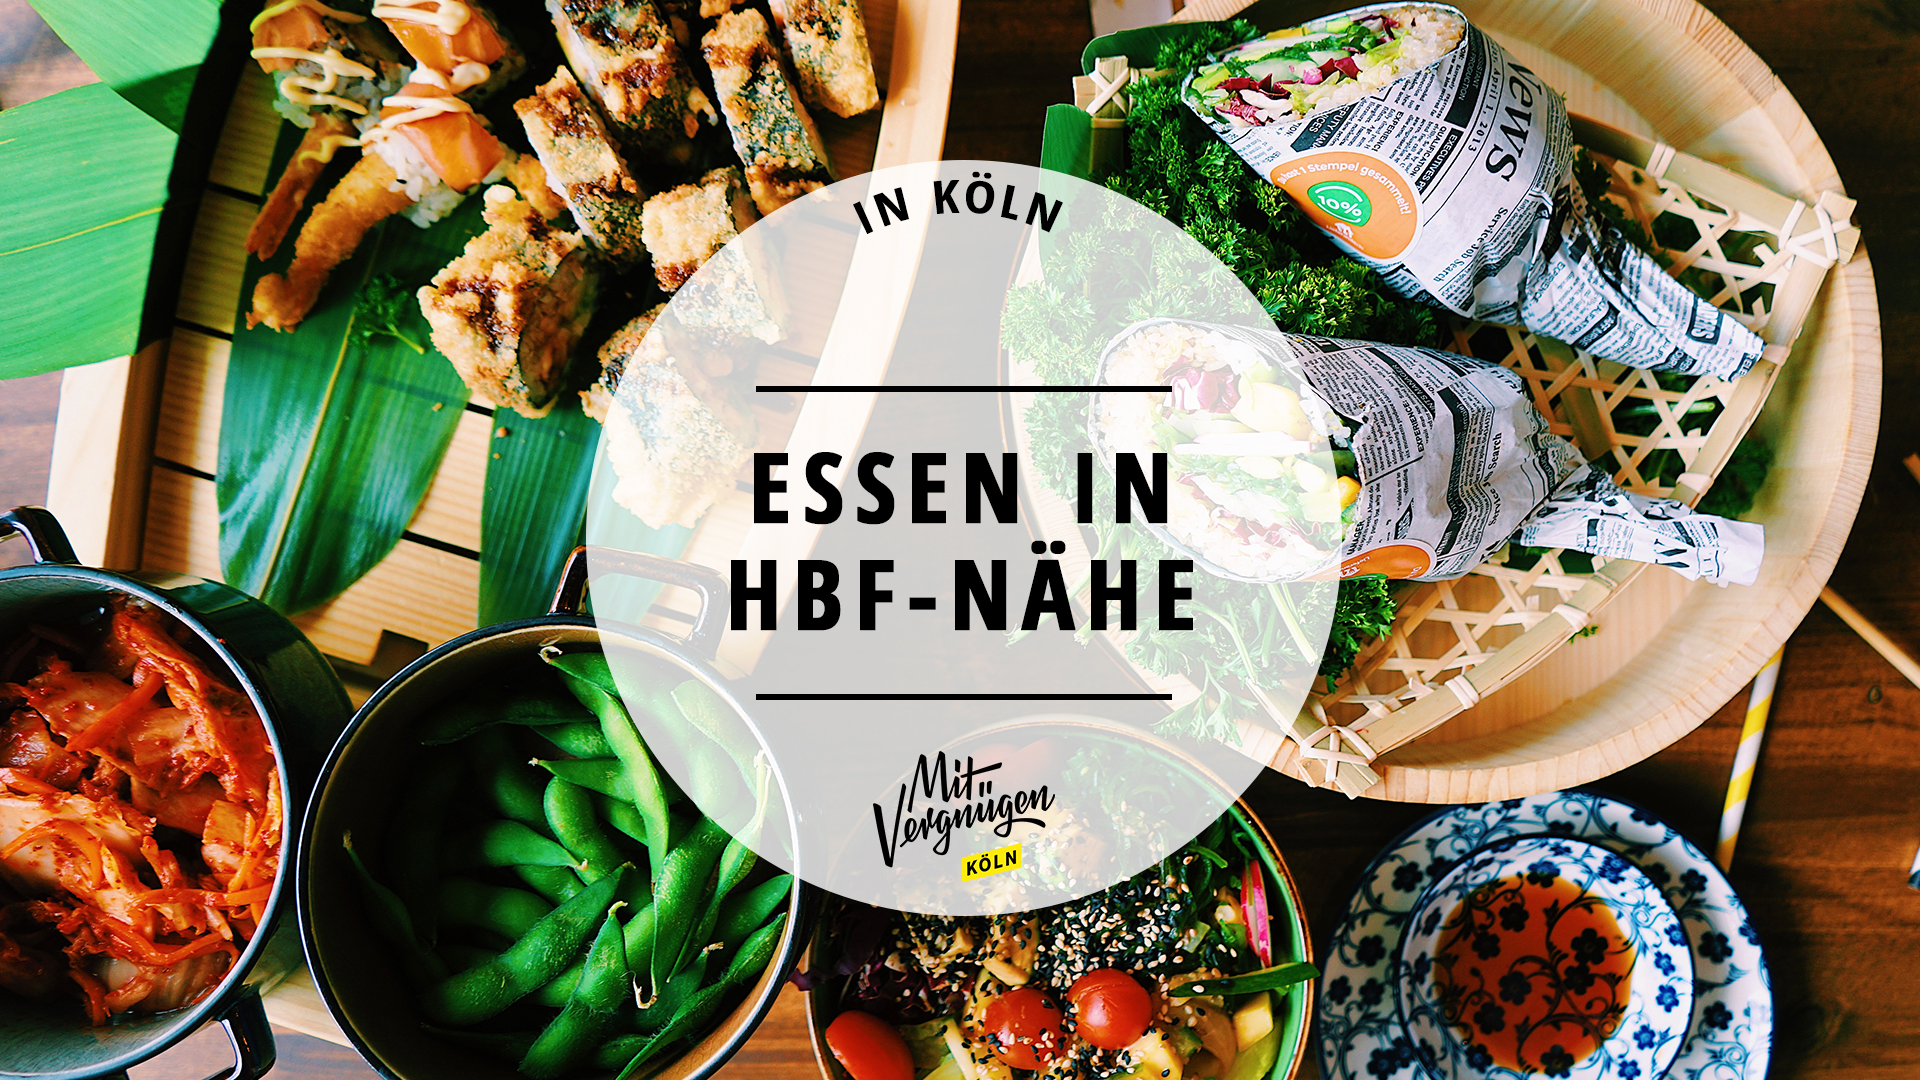 #11 Restaurants in Hauptbahnhof-Nähe, in denen ihr lecker essen könnt